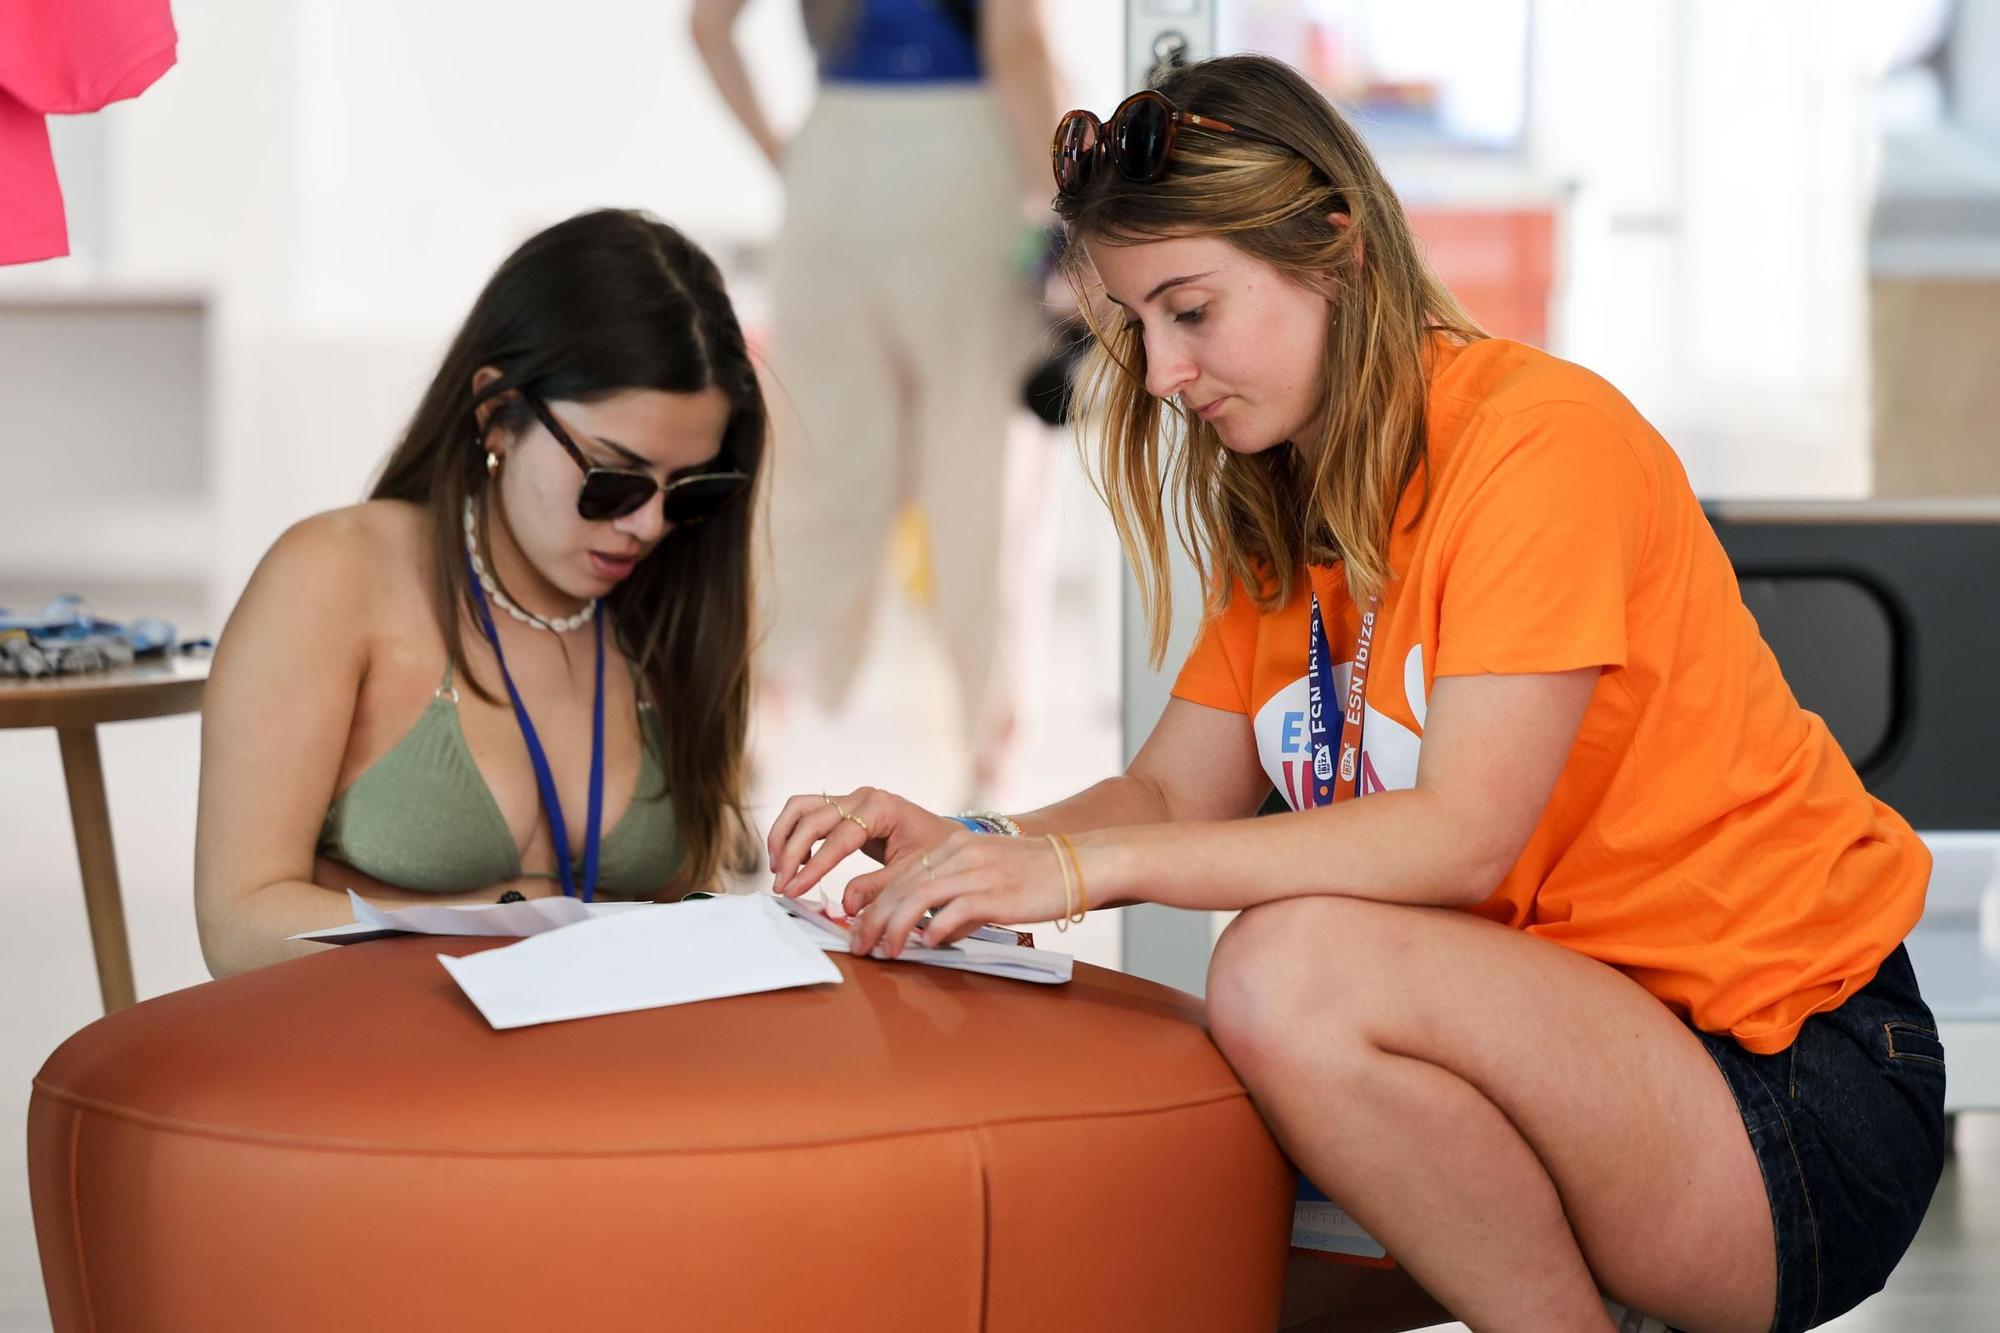 Visita de 2.000 Erasmus a Ibiza: "Me encanta la vibra del lugar"